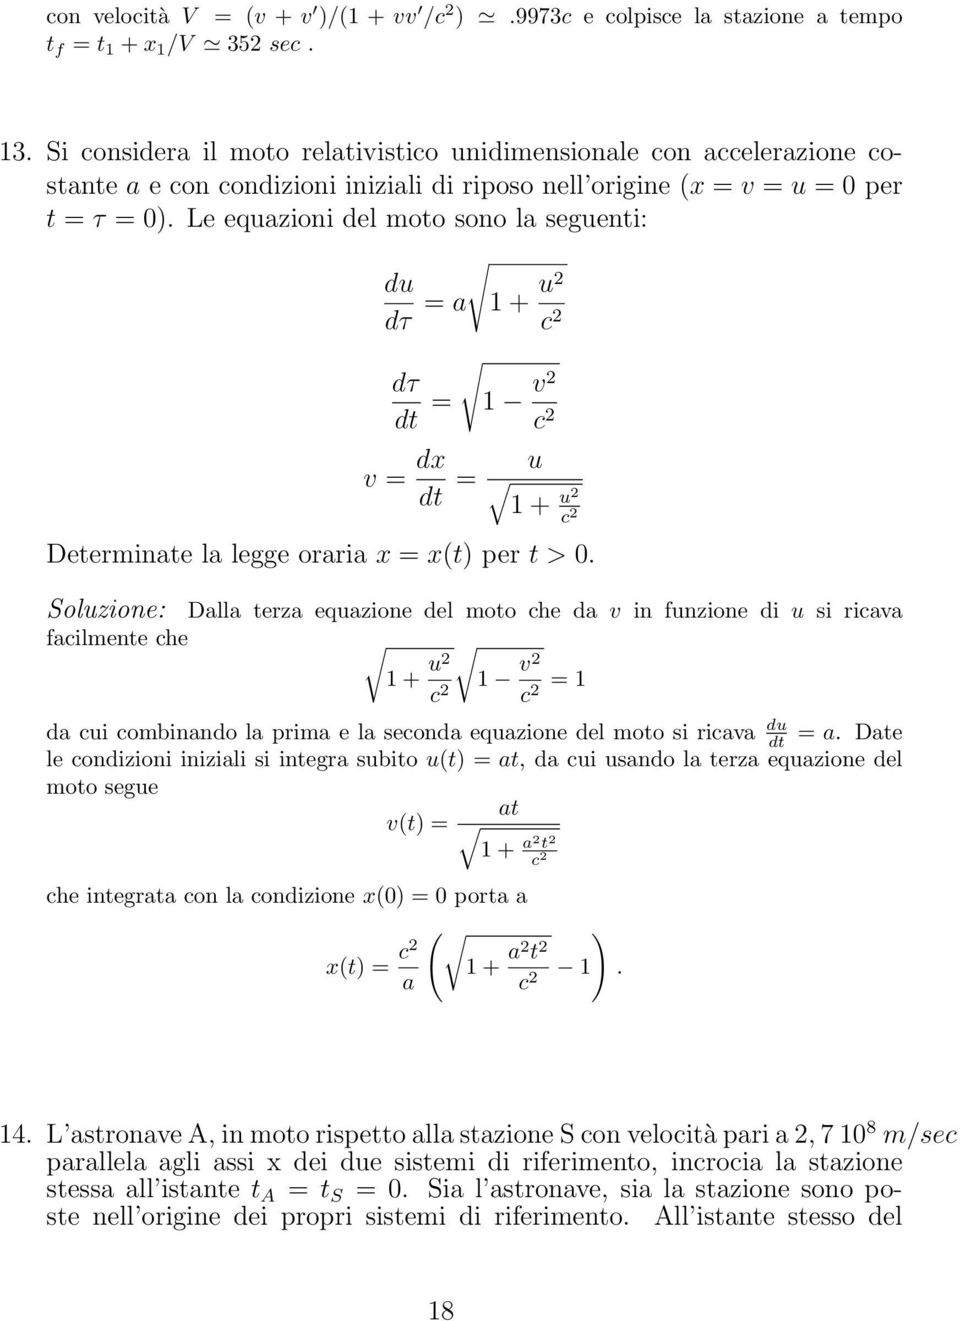 Le equazioni del moto sono la seguenti: du dτ = a 1 + u c dτ dt = 1 v c v = dx dt = u 1 + u c Determinate la legge oraria x = x(t) per t > 0.